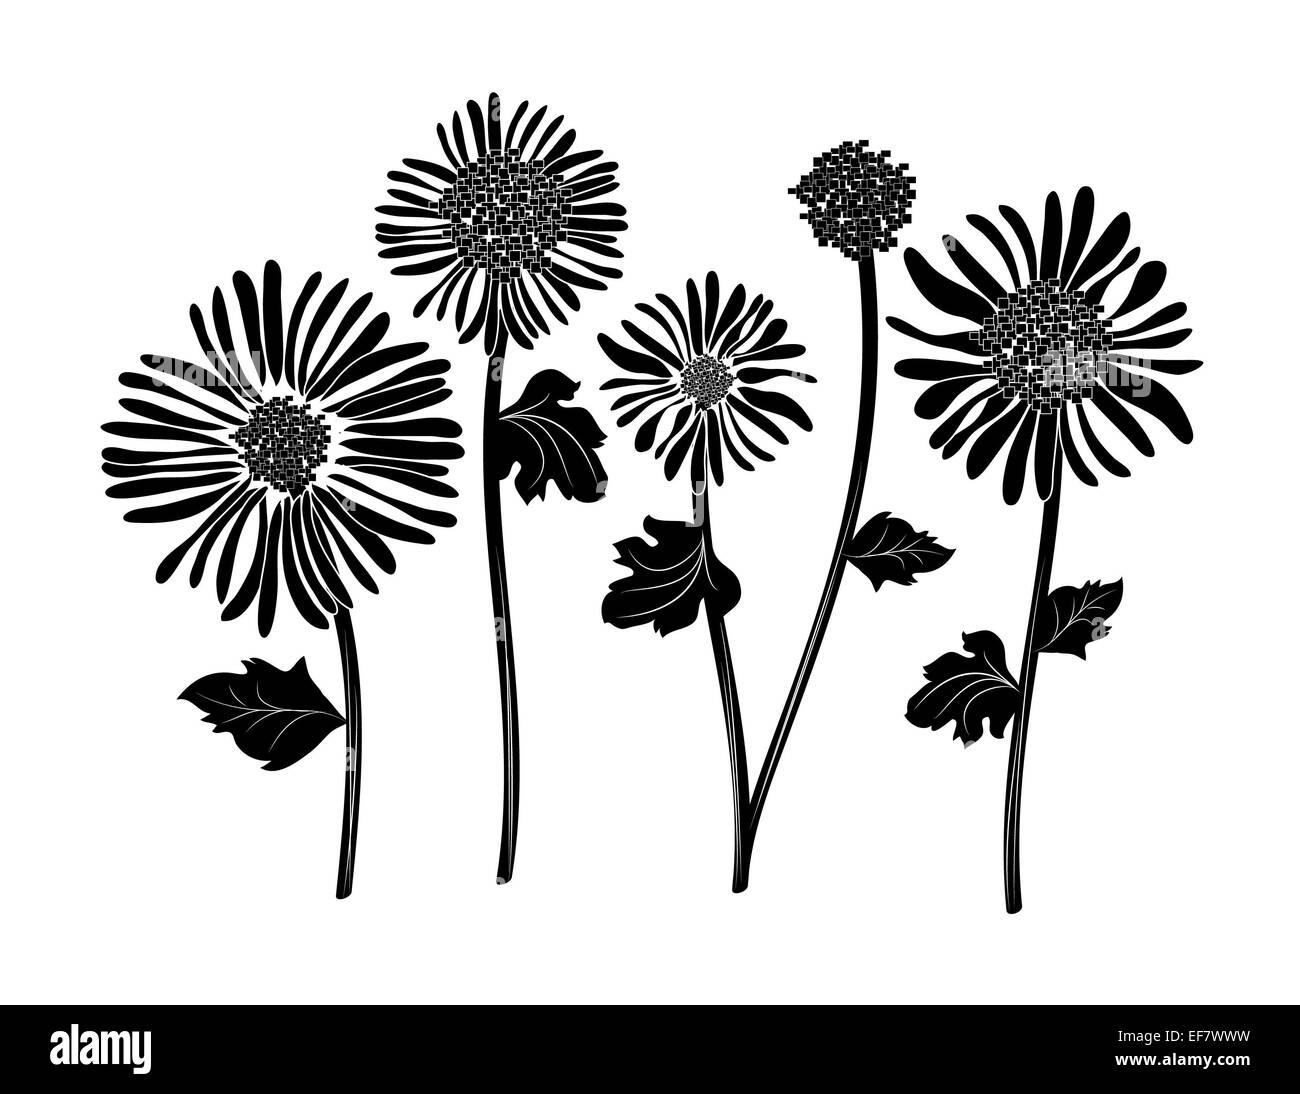 Illustration noir et blanc de 5 pétales de fleurs et les tiges heureux dans le vent à des fins décoratives et de motifs romantiques Banque D'Images